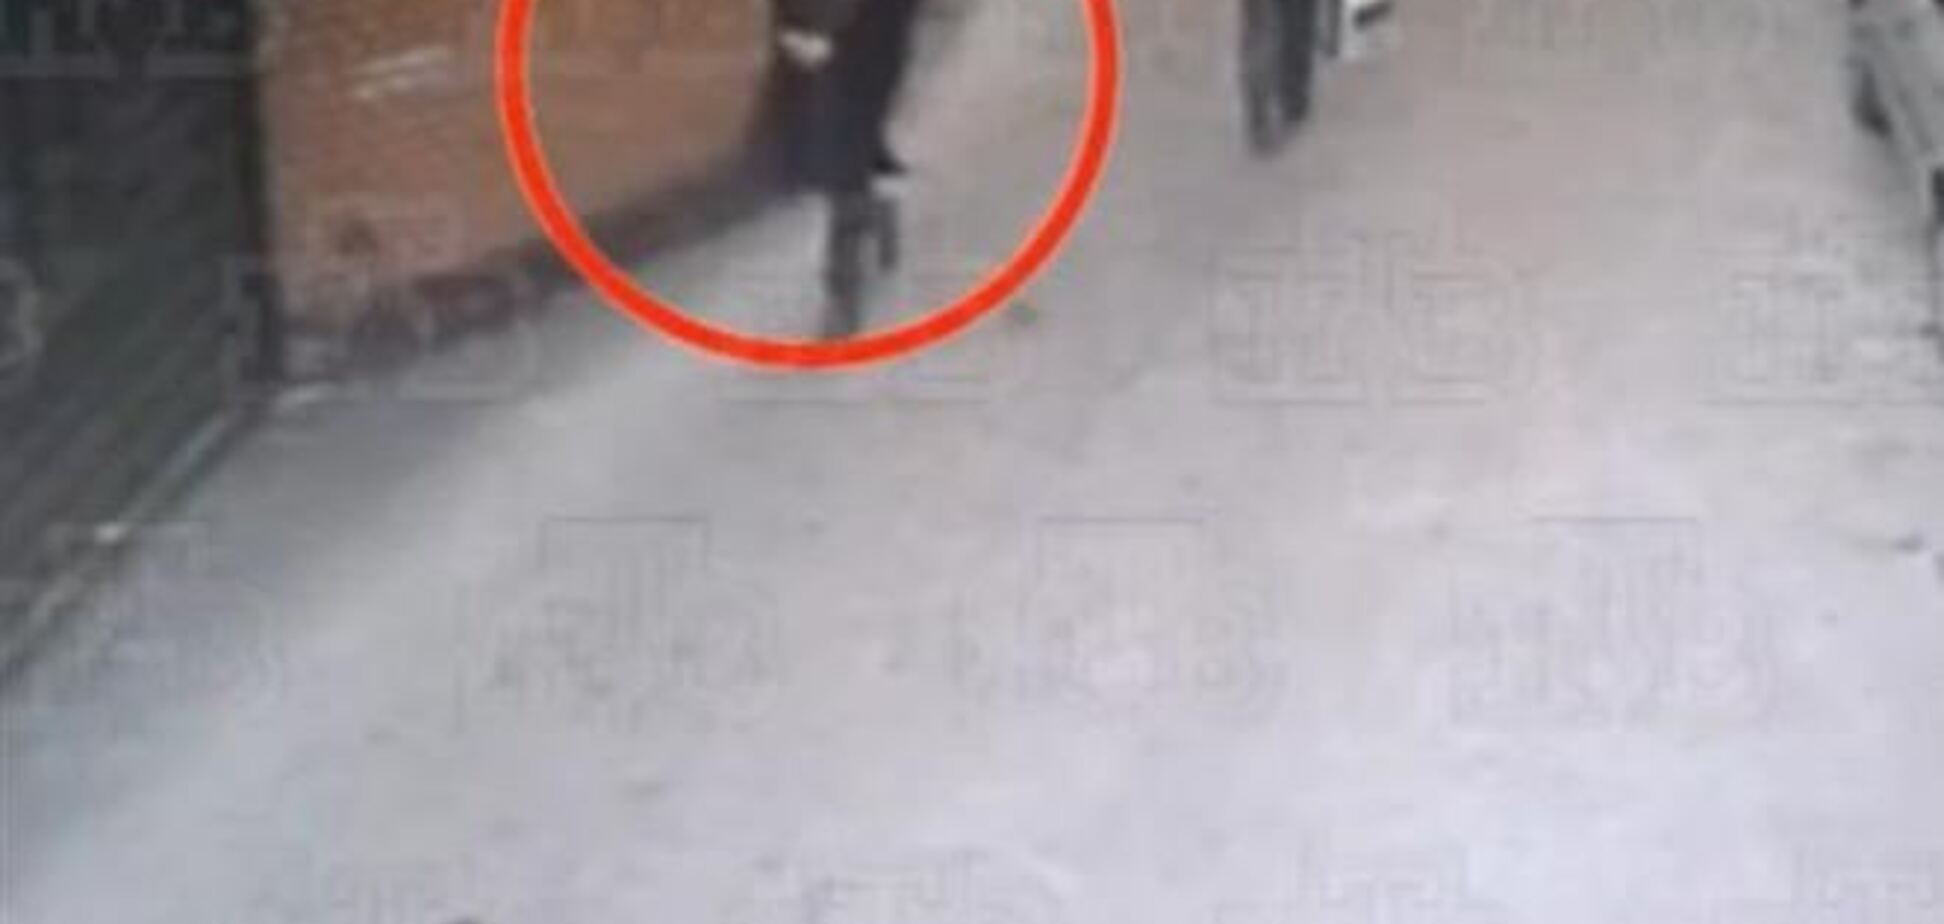 Оприлюднено відео, де видно московського учня-стрілка до моменту стрільби